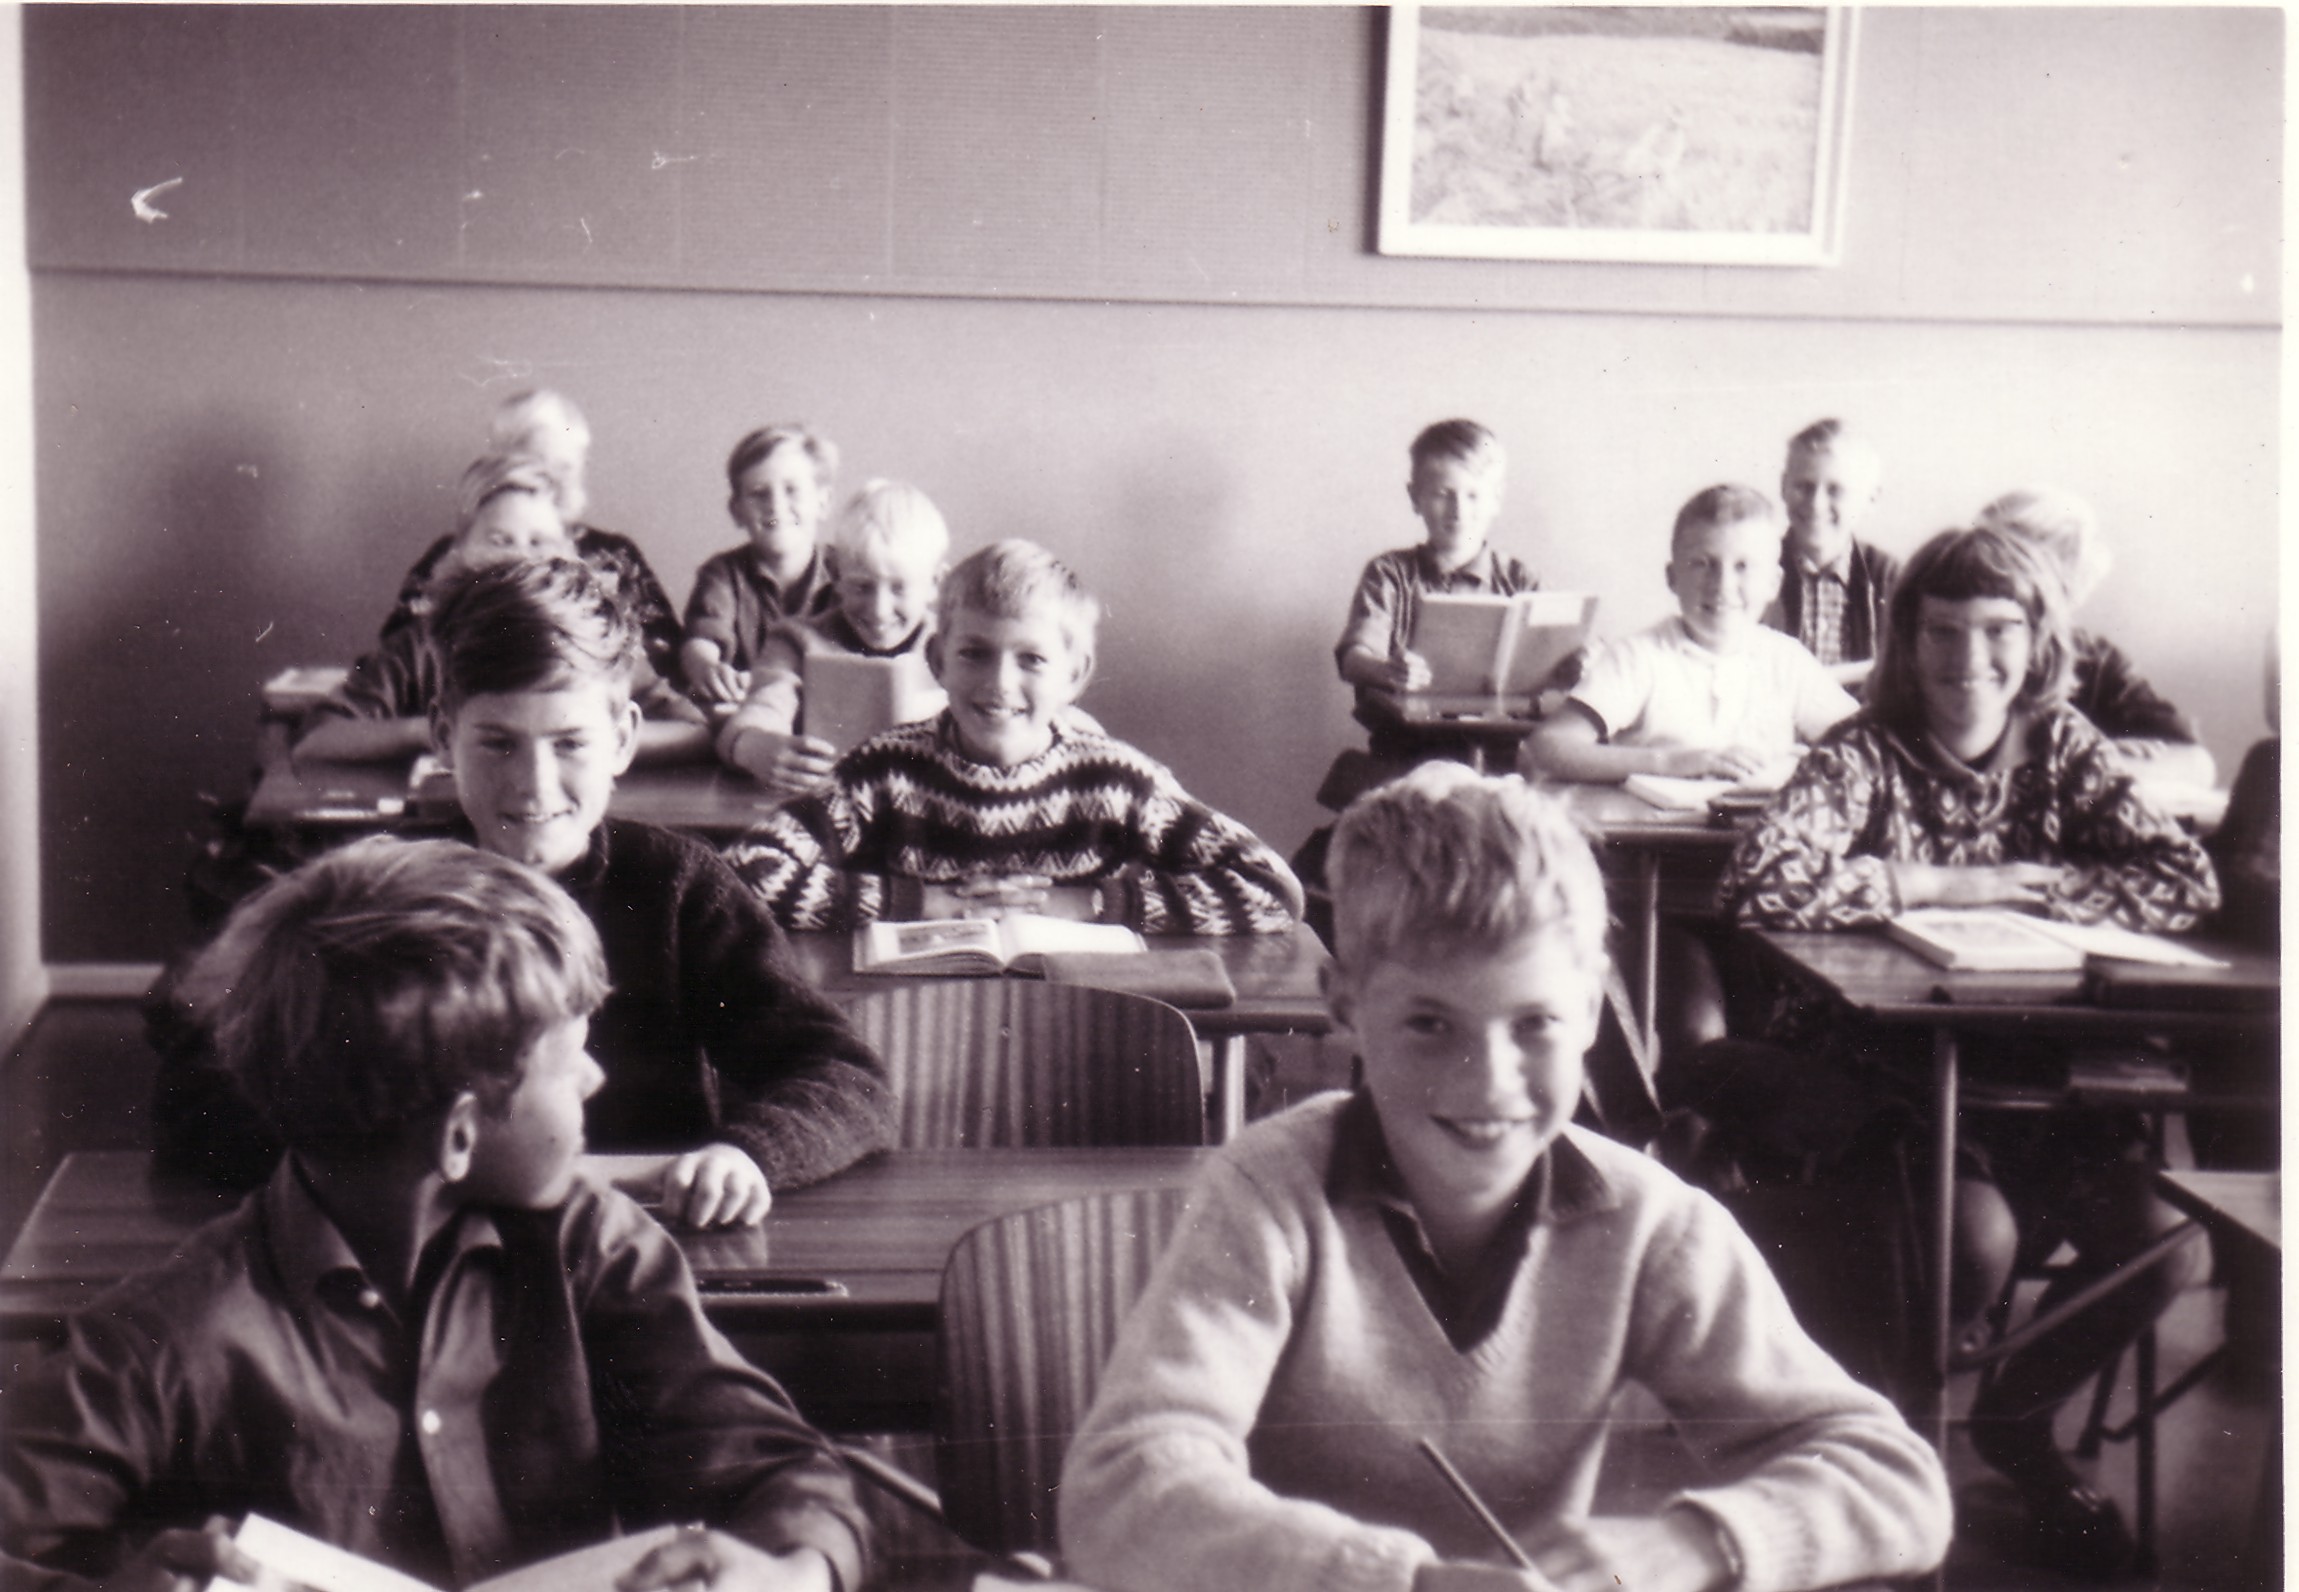 Skolebillede 1964